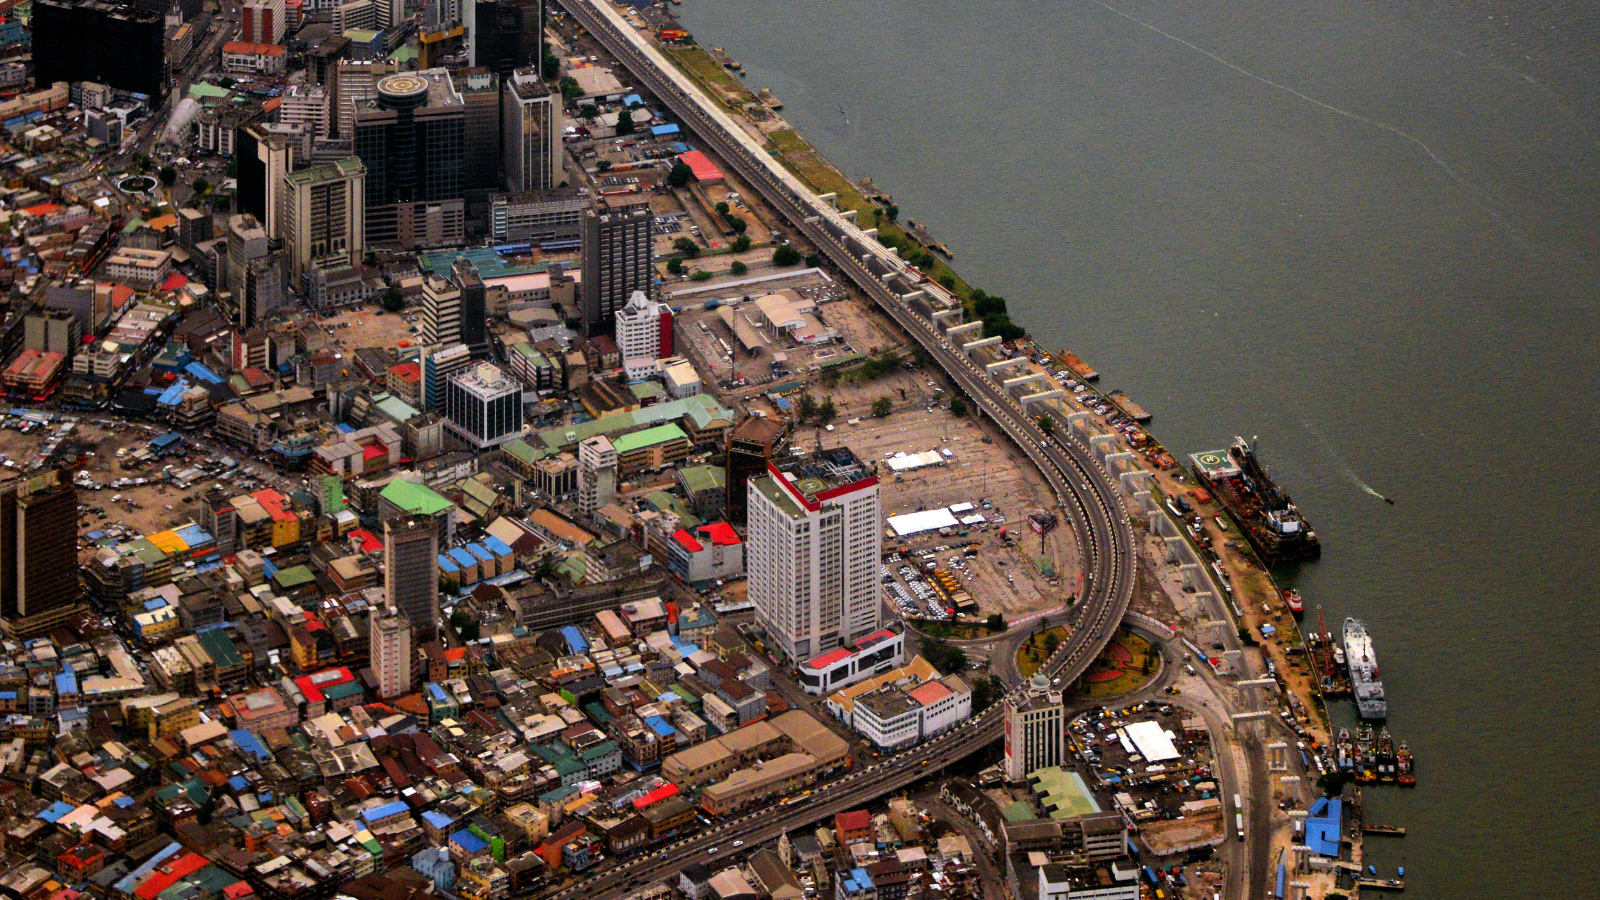 Lagos, Nigeria